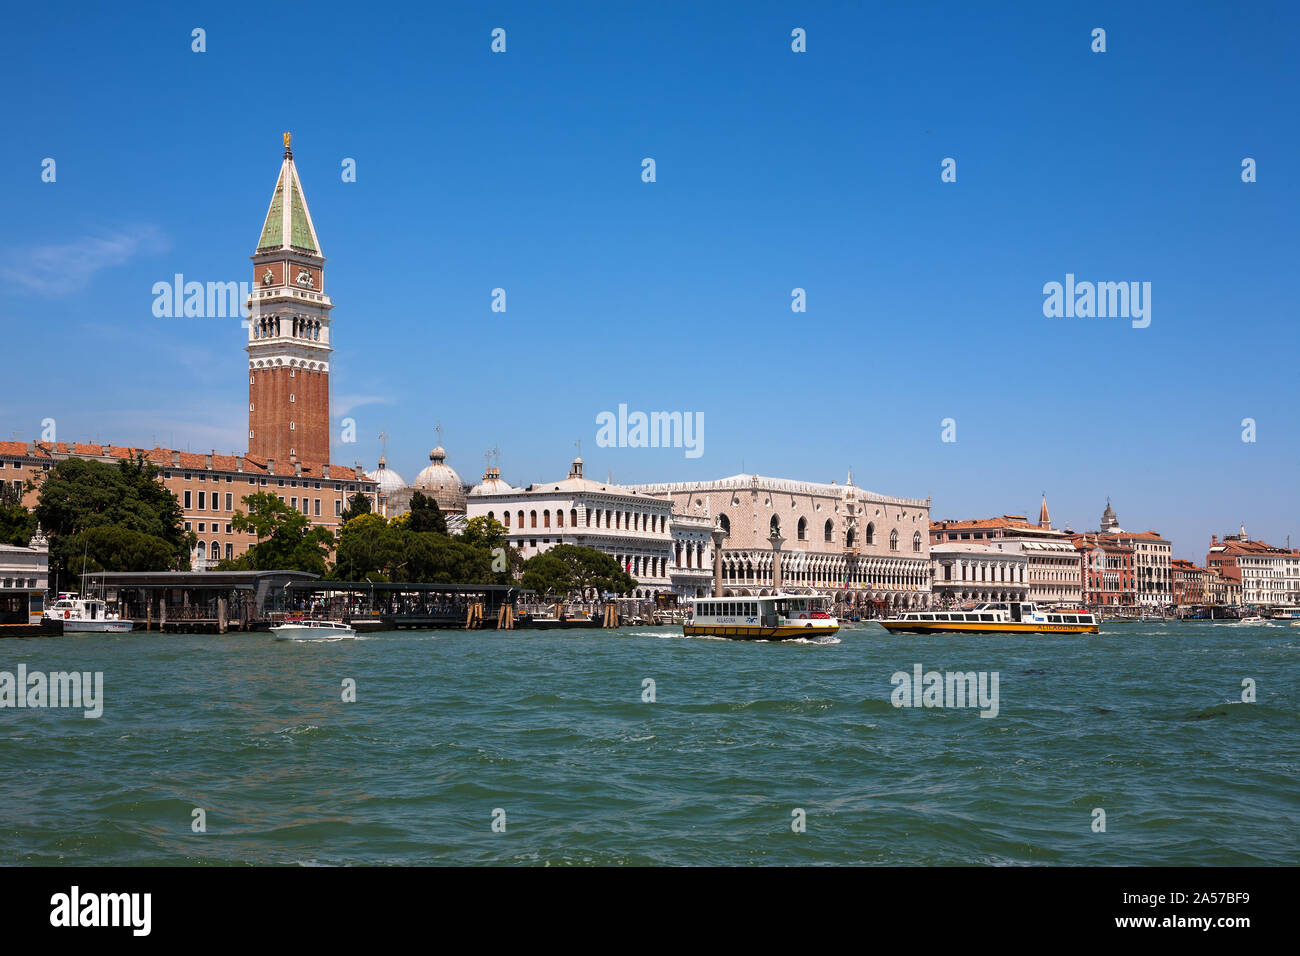 San Marco: the Campanile, Palazzo Ducale, Piazzetta and Biblioteca Marciana and vaporetti - from the Punta della Dogana, Dorsoduro, Venice, Italy Stock Photo